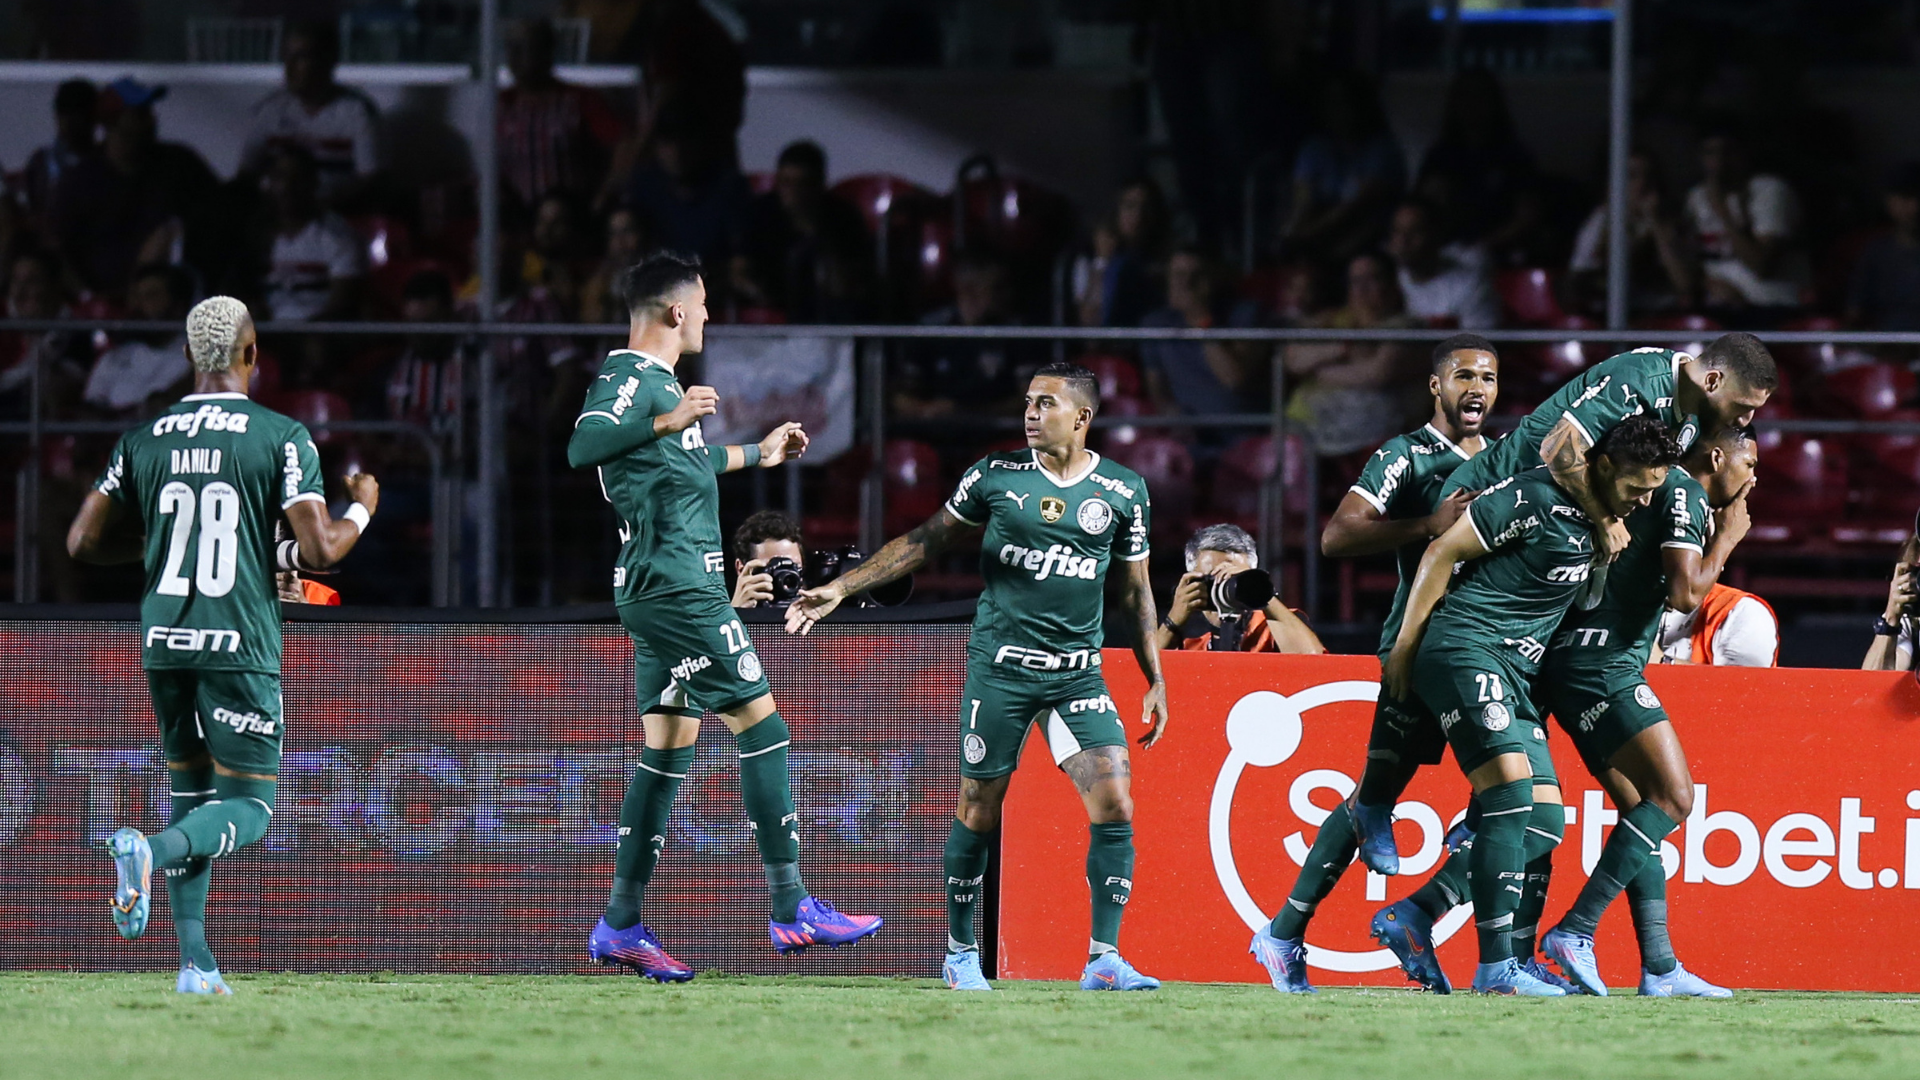 Campeonato Paulista chega à fase final